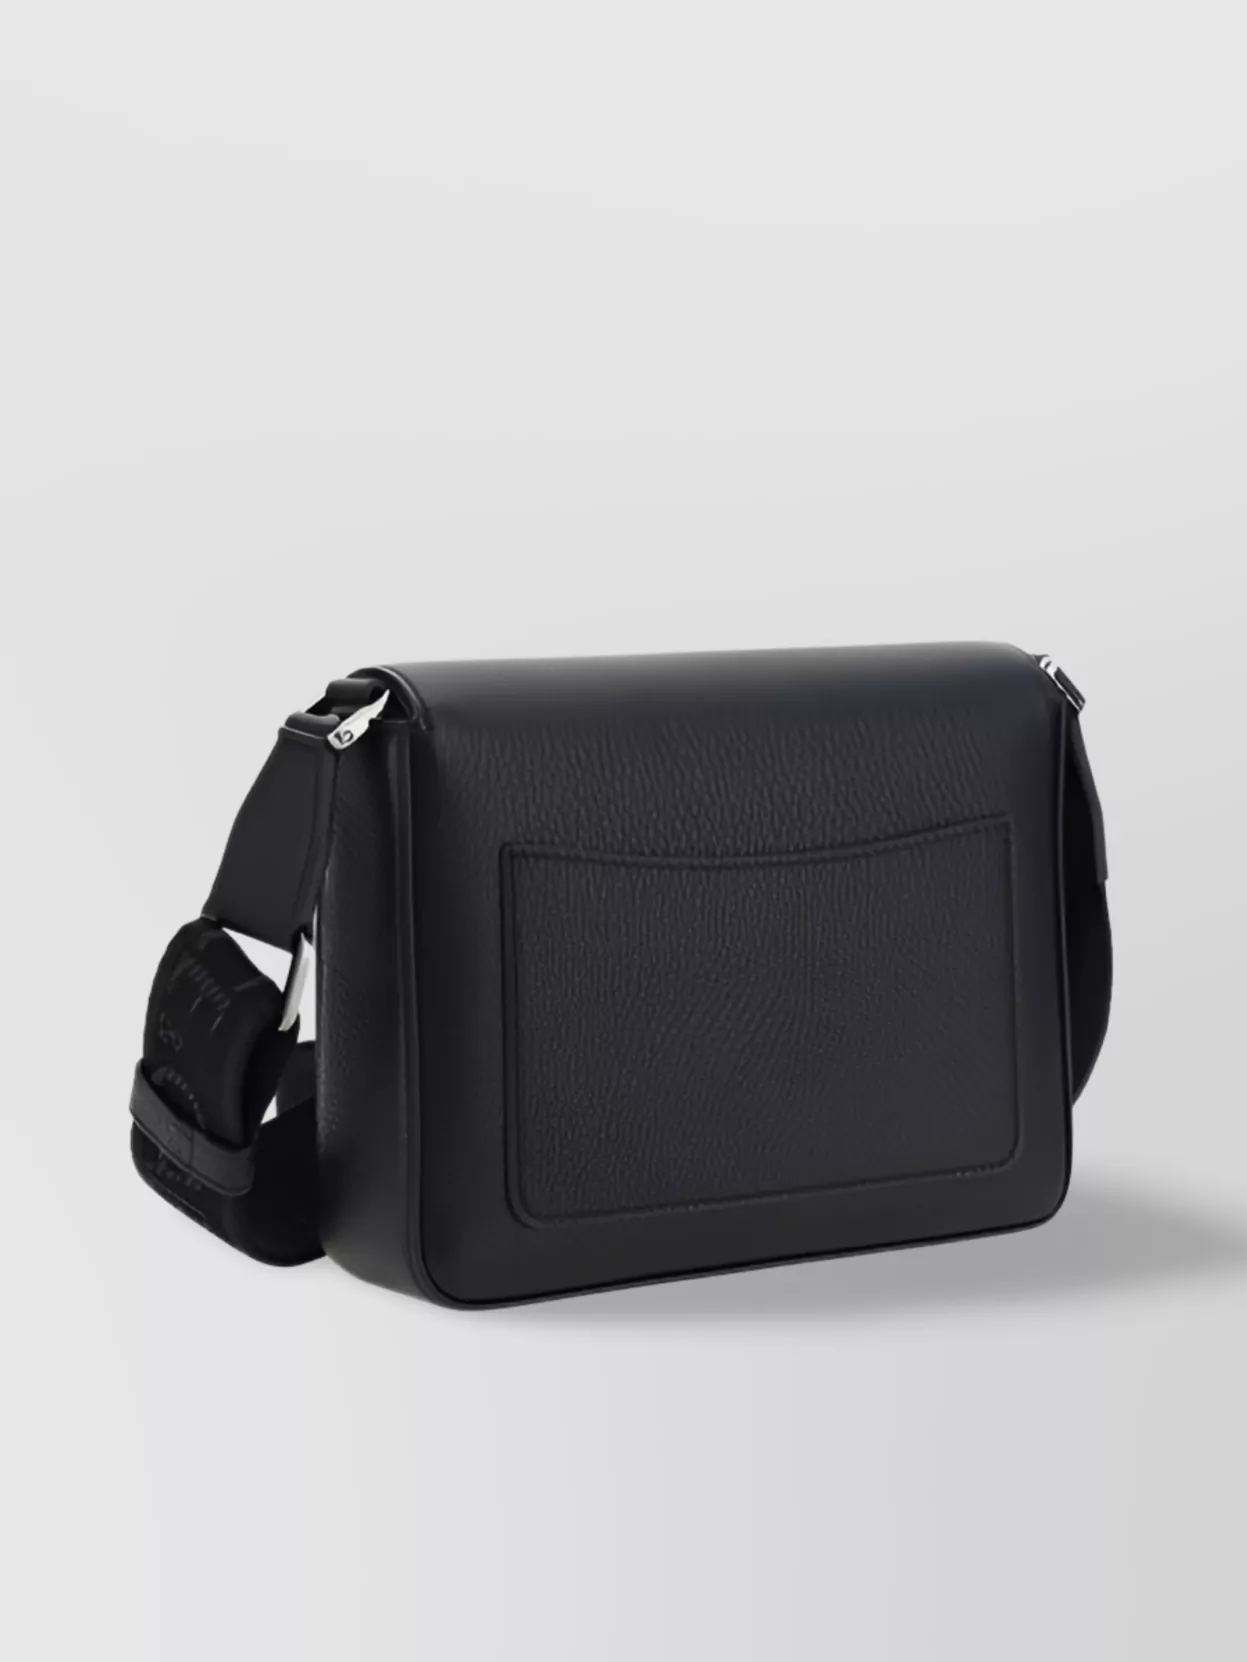 Dolce & Gabbana Calfskin Rectangular Shoulder Bag With External Pocket In Black